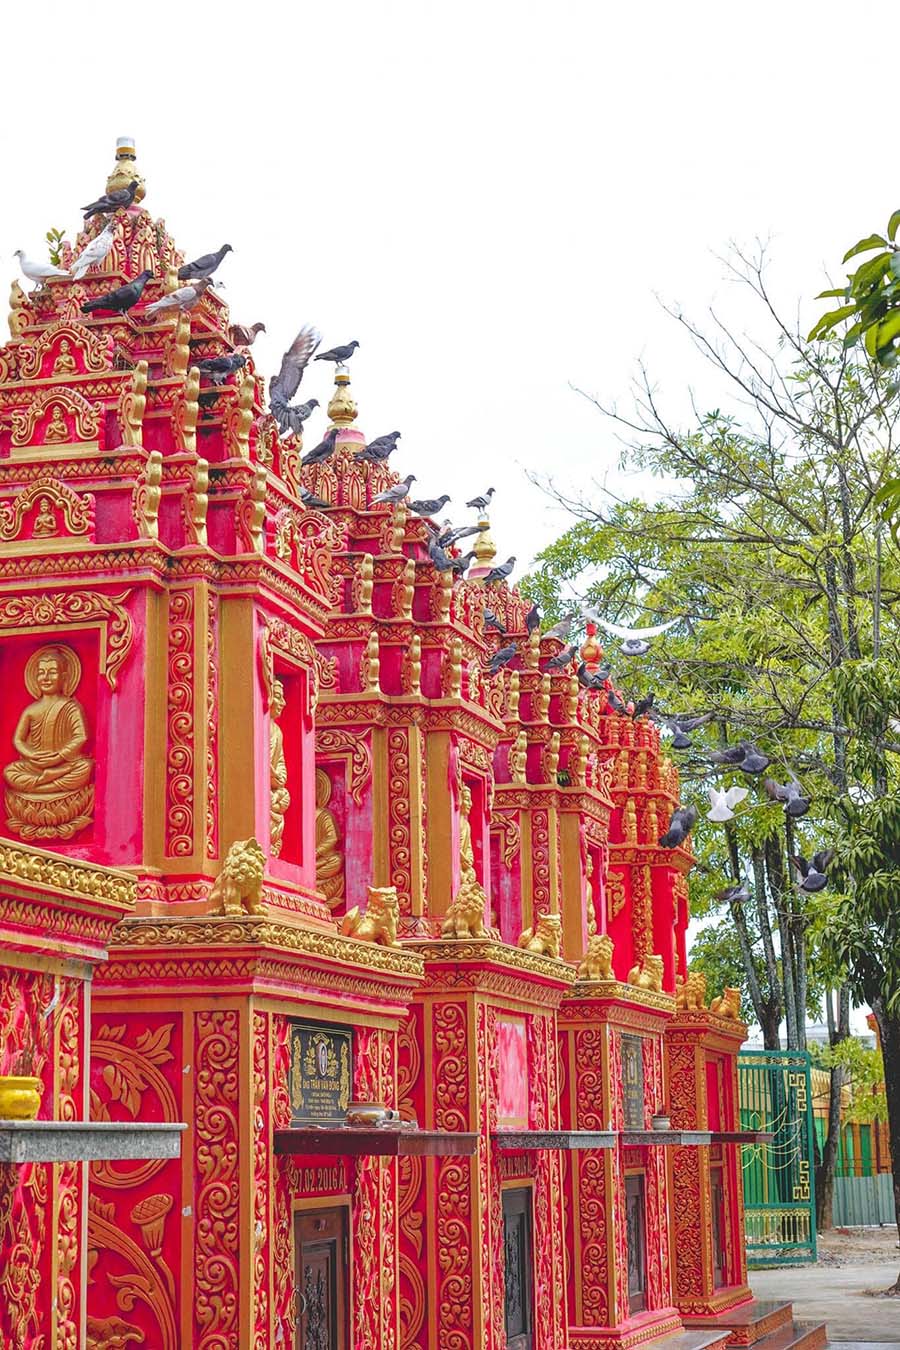 Hành trình review chùa Monivongsa Bopharam với không gian đẹp như tranh vẽ 6